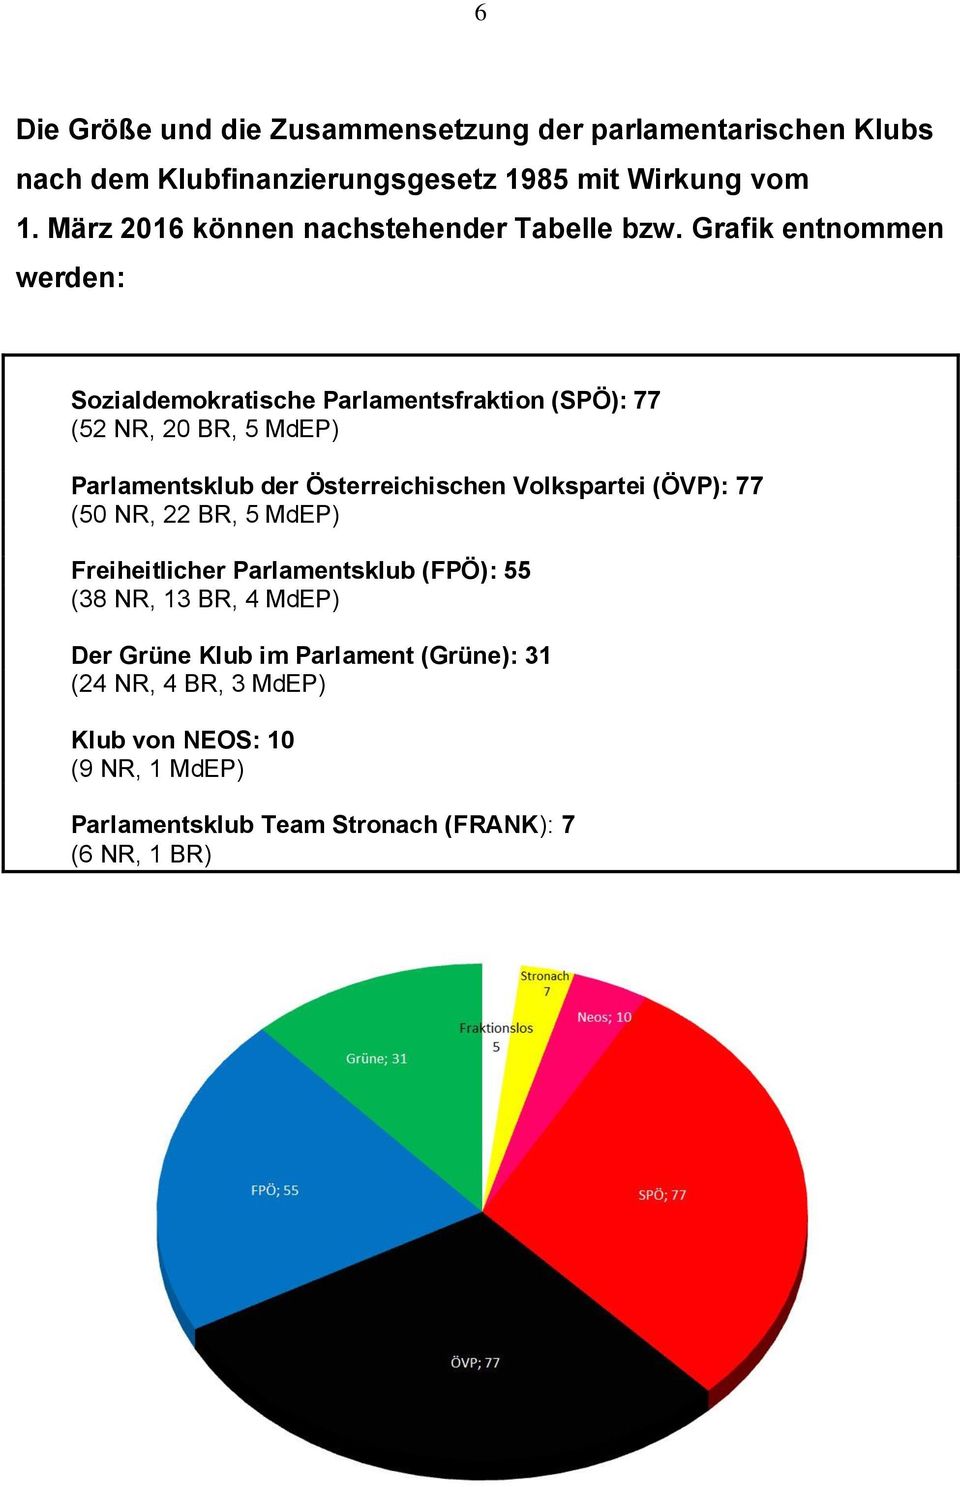 Grafik entnommen werden: Sozialdemokratische Parlamentsfraktion (SPÖ): 77 (52 NR, 20 BR, 5 MdEP) Parlamentsklub der Österreichischen